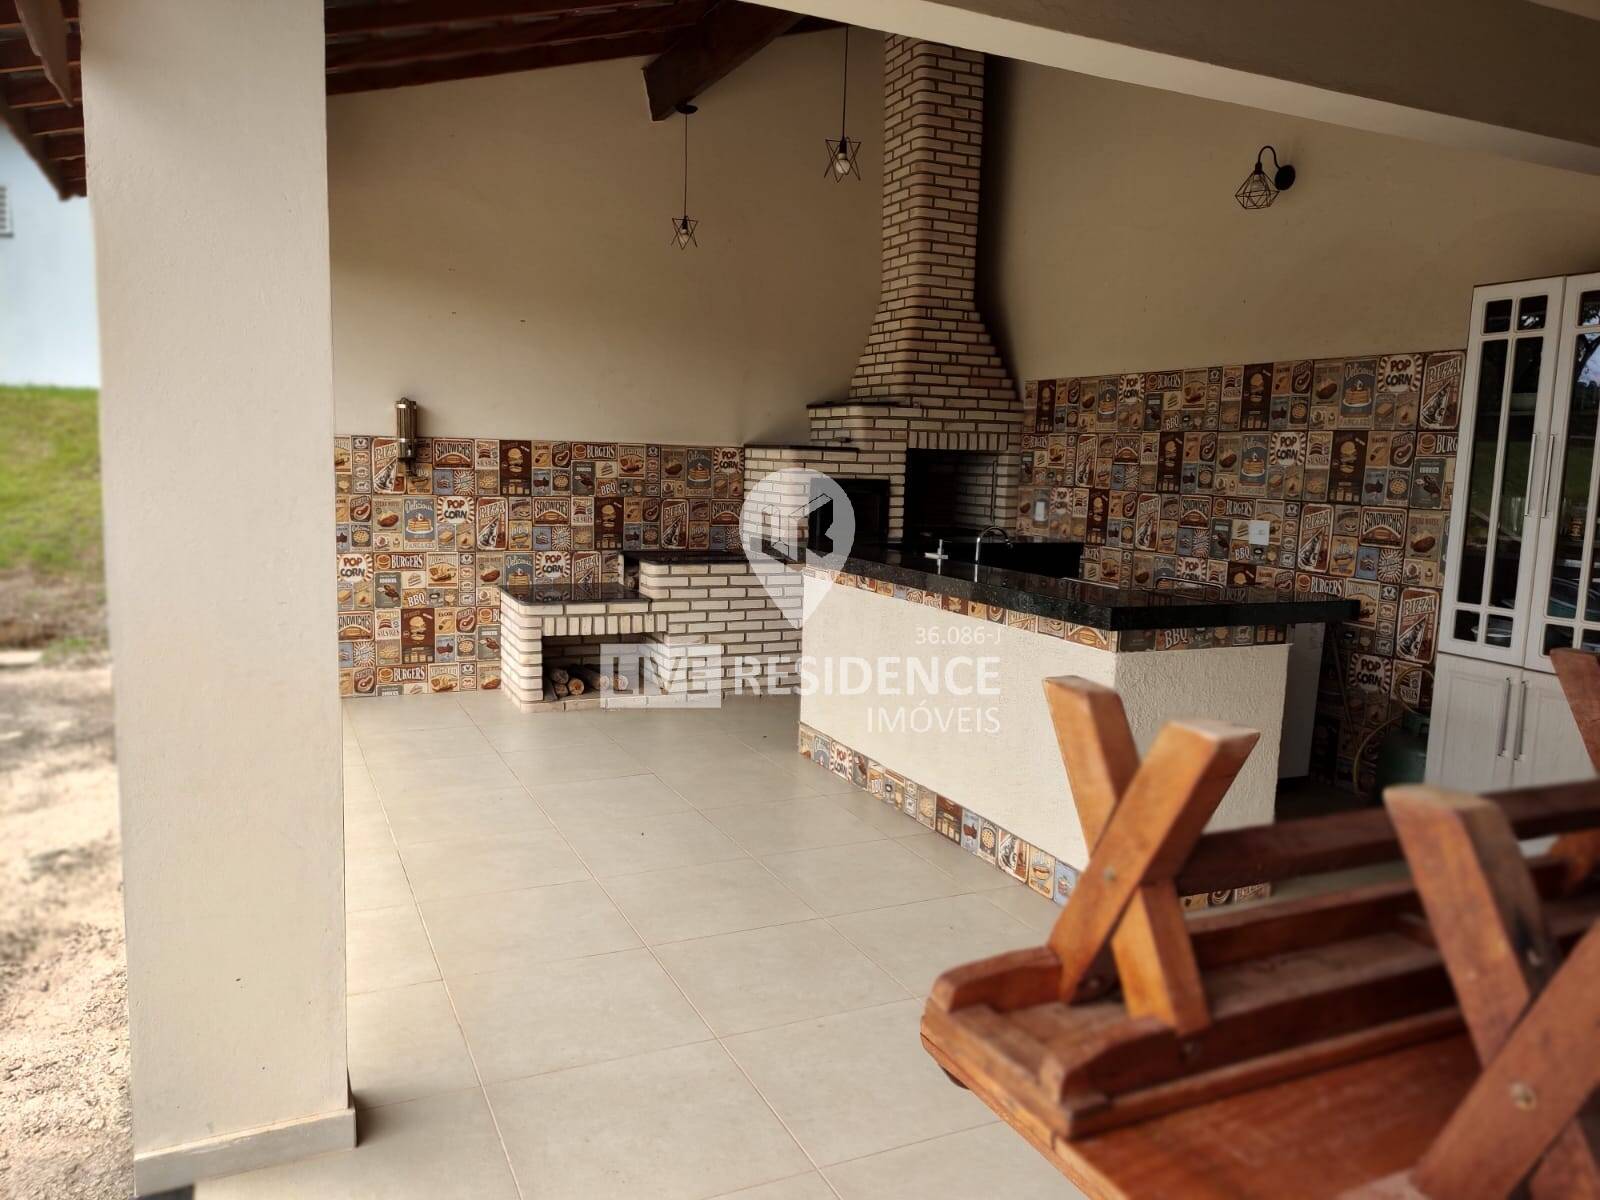 Chácara a venda em Itatiba com linda vista  Imóveis Live residence